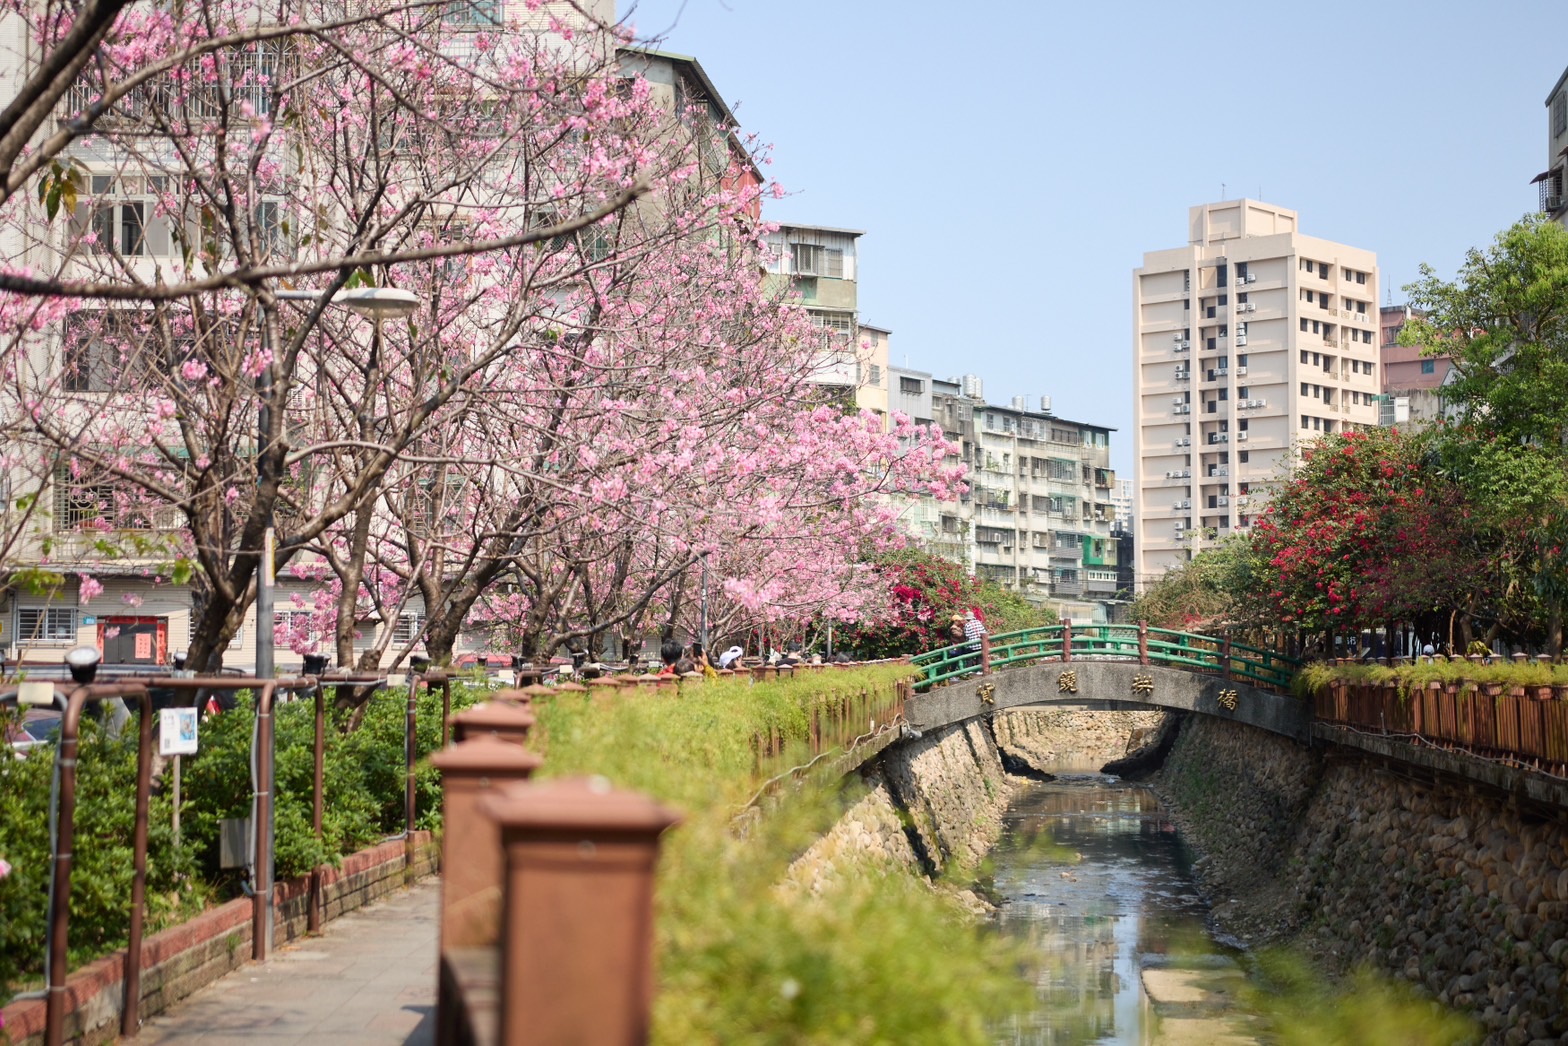 希望之河沿岸有60多株櫻花